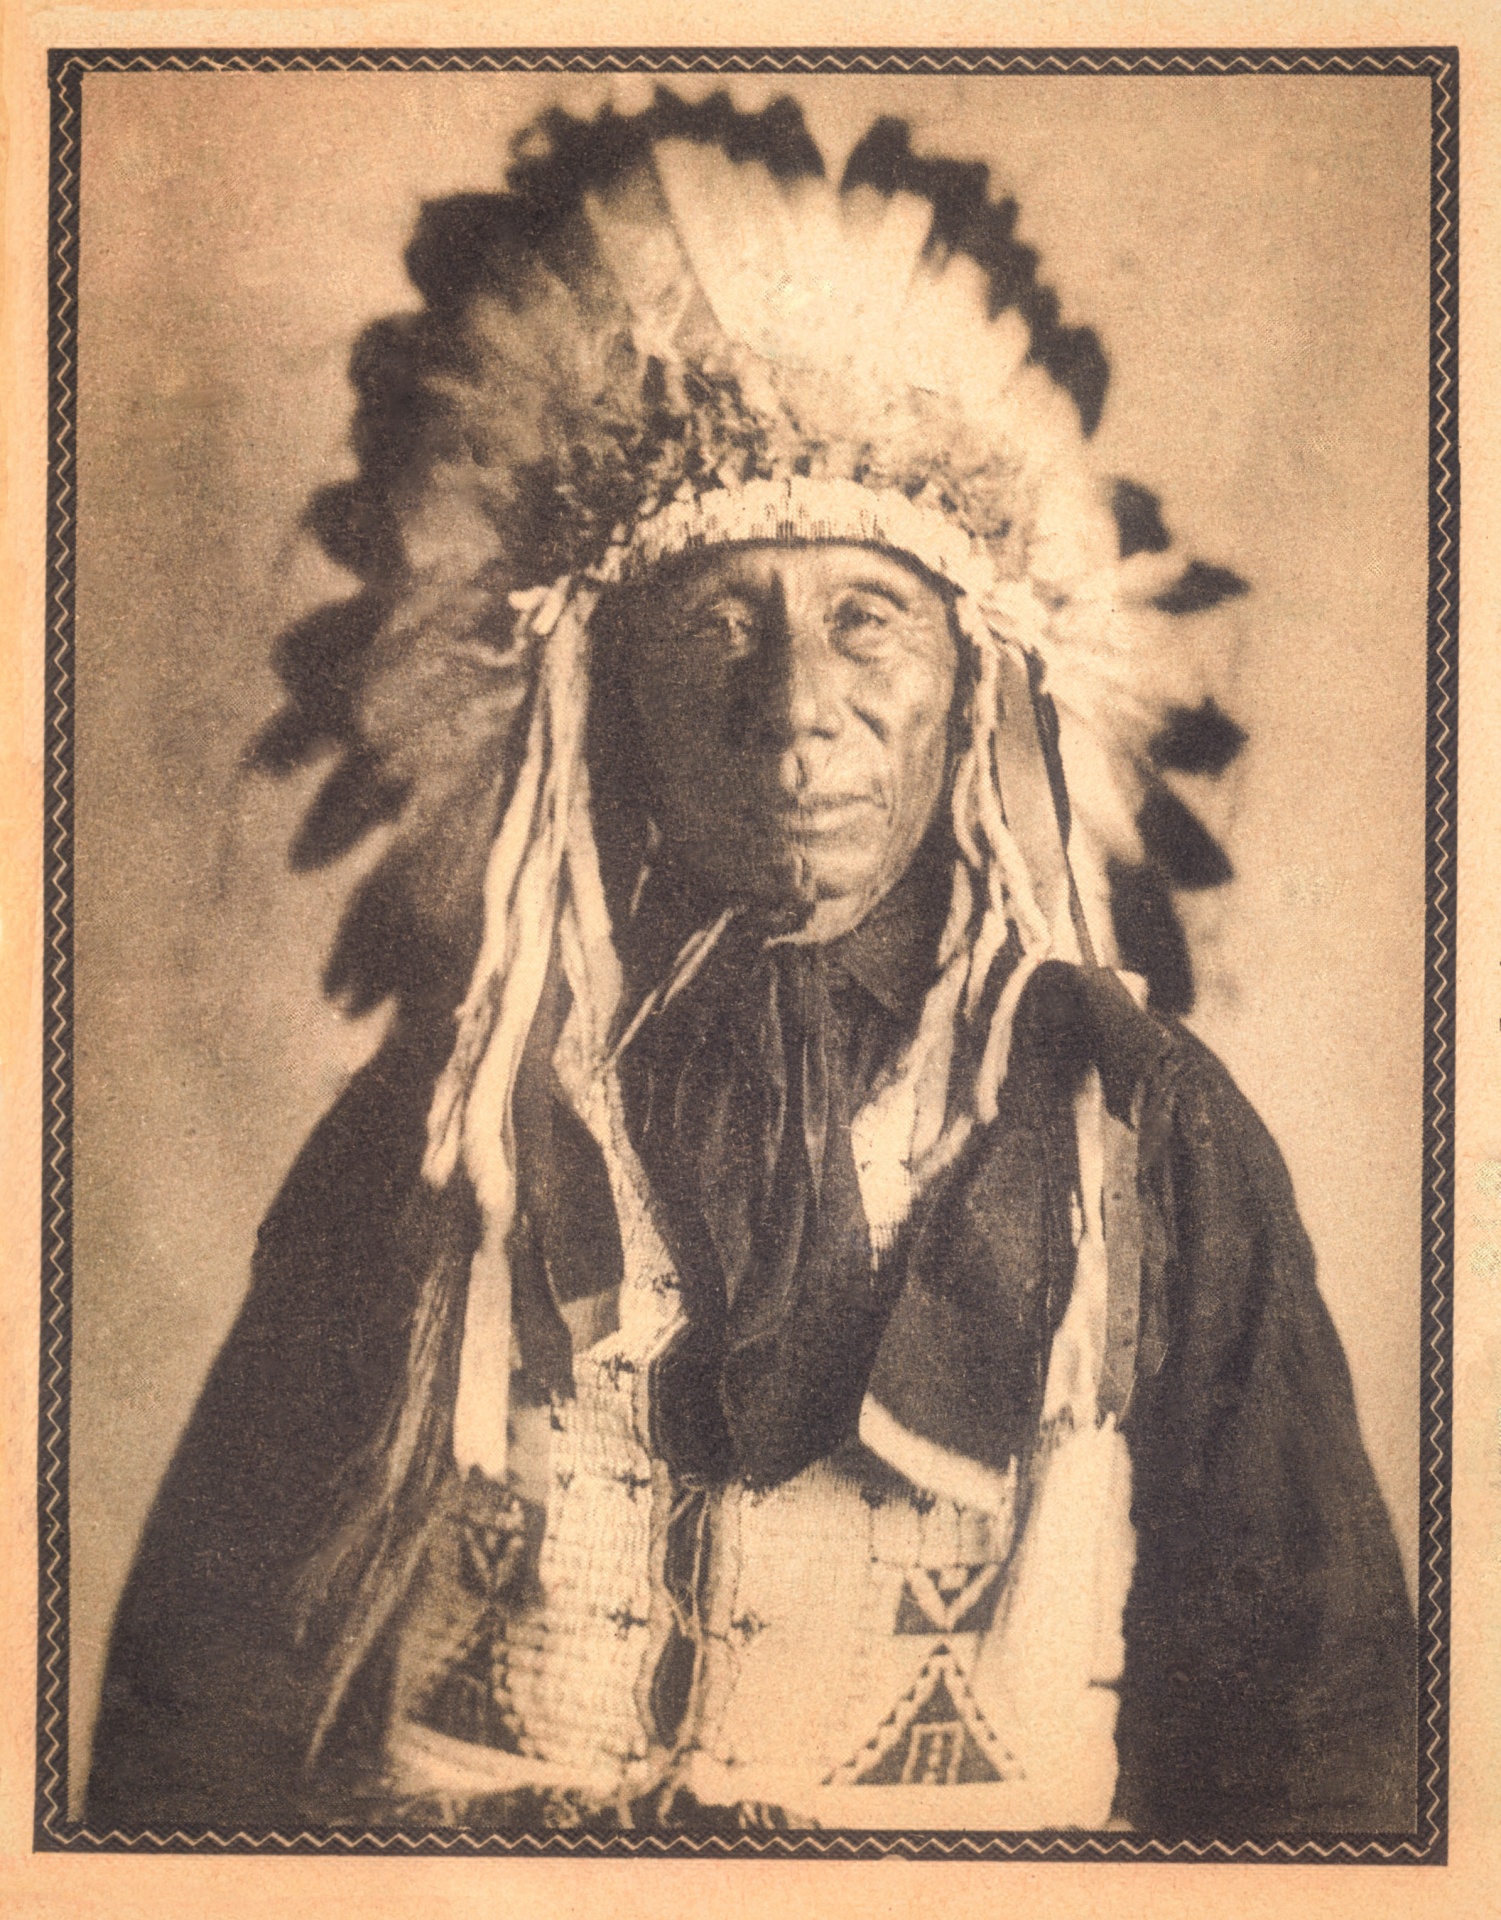 Famous American Indian, Loneman,